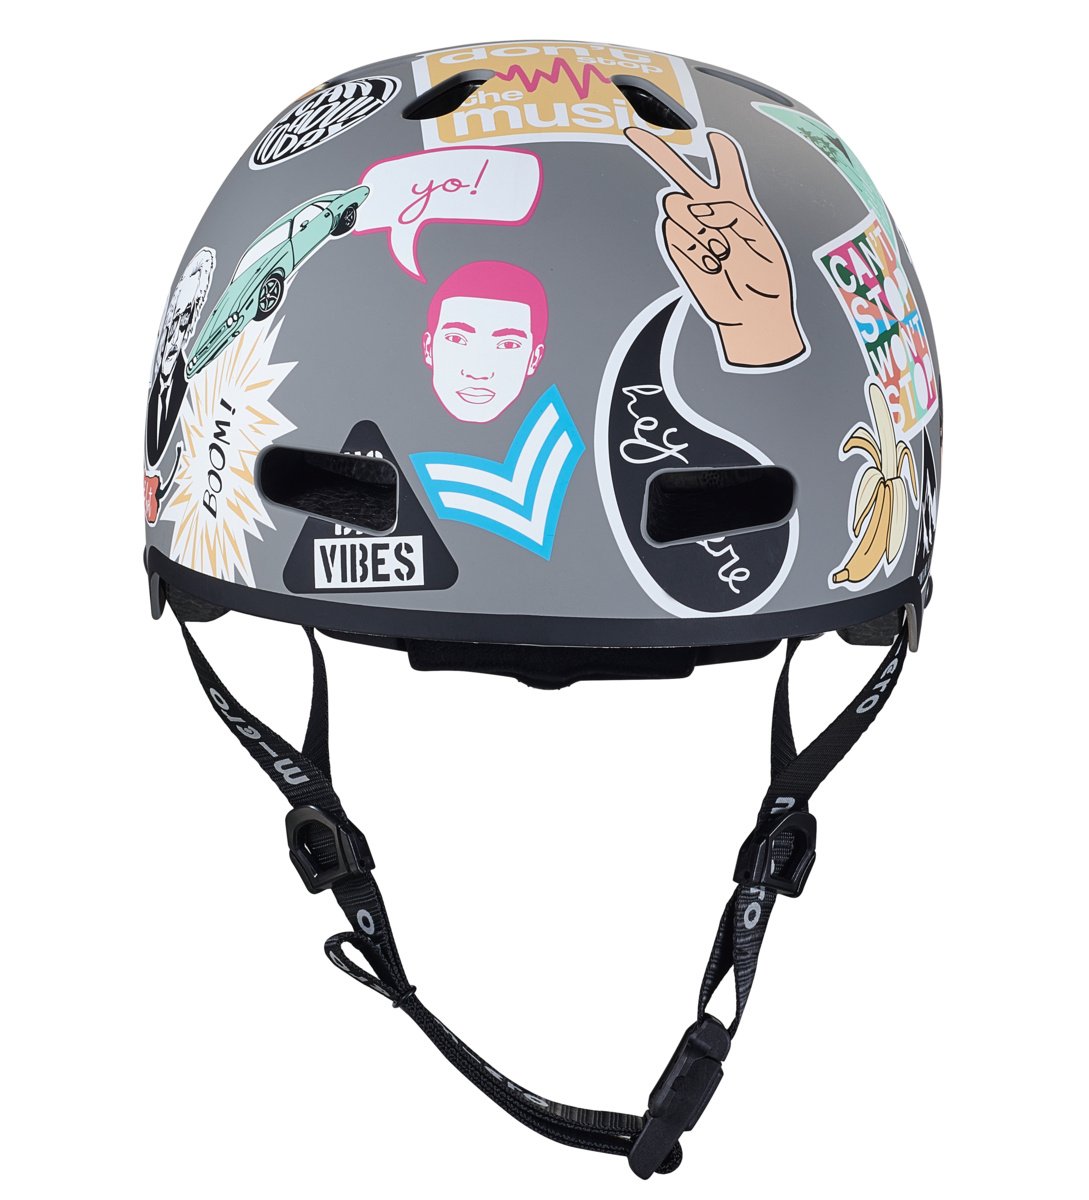 Micro helm Deluxe - Sticker design, Helmen